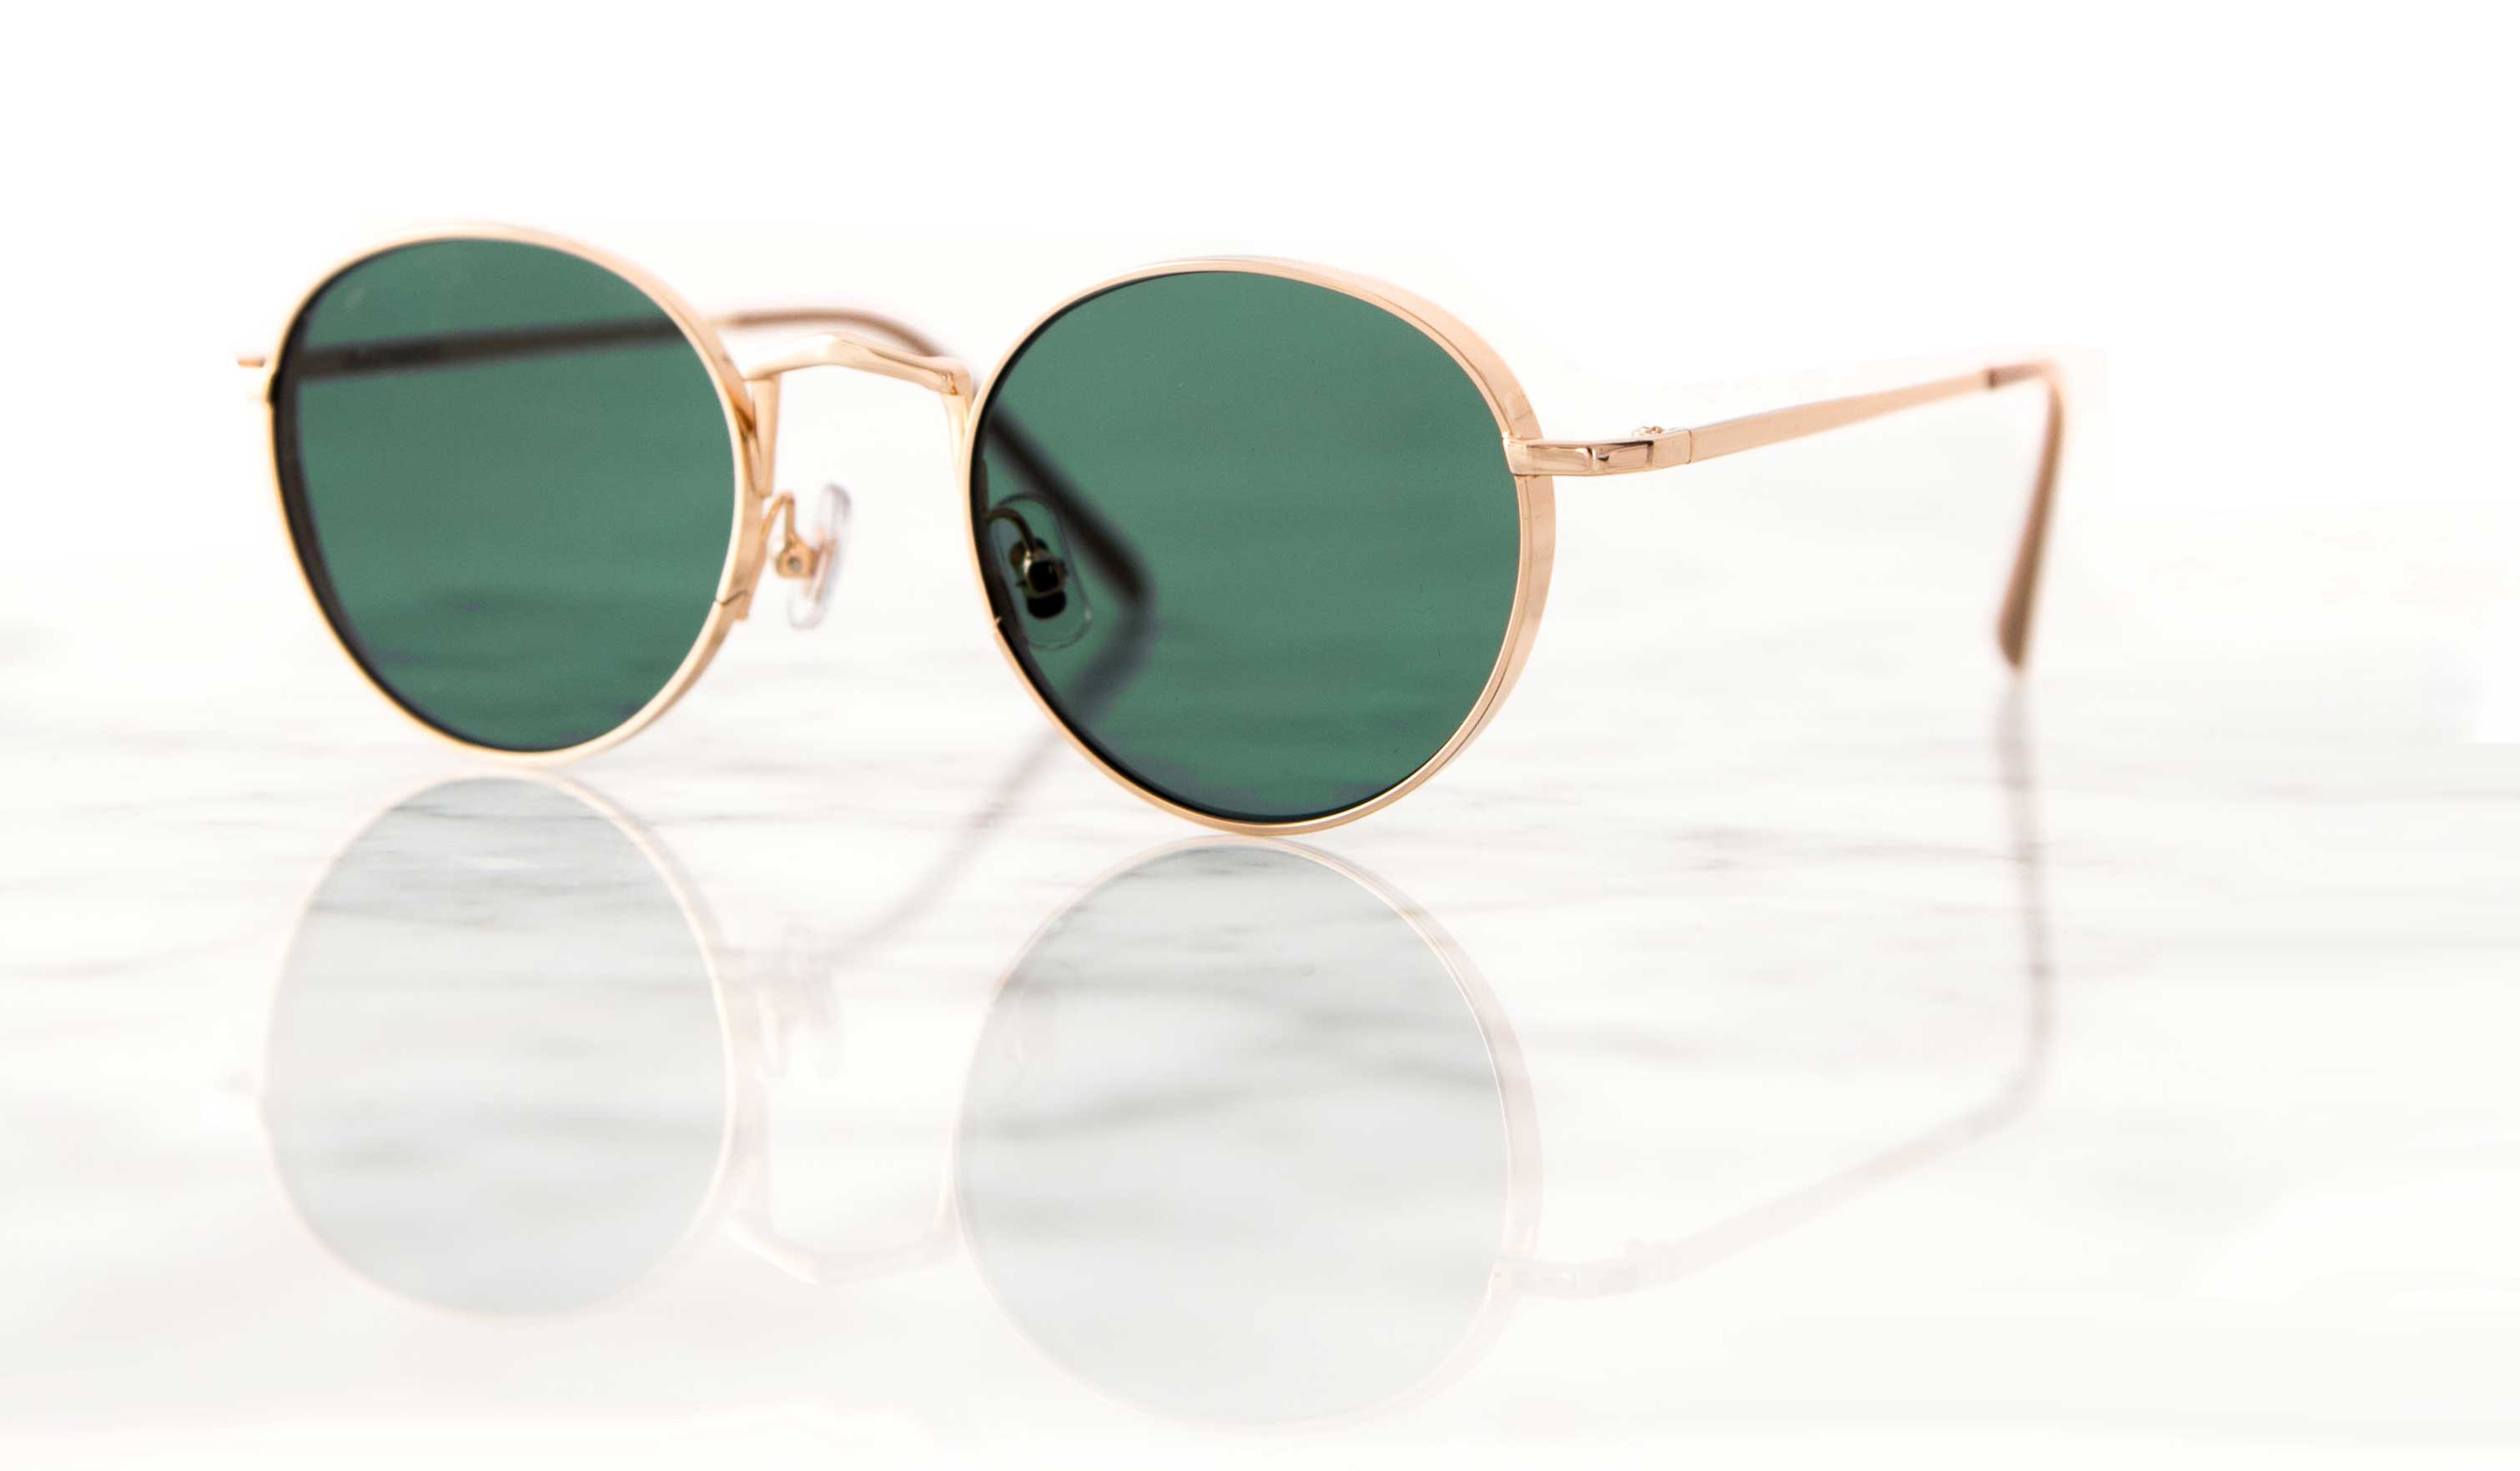 G15 Lenses in round sunglasses